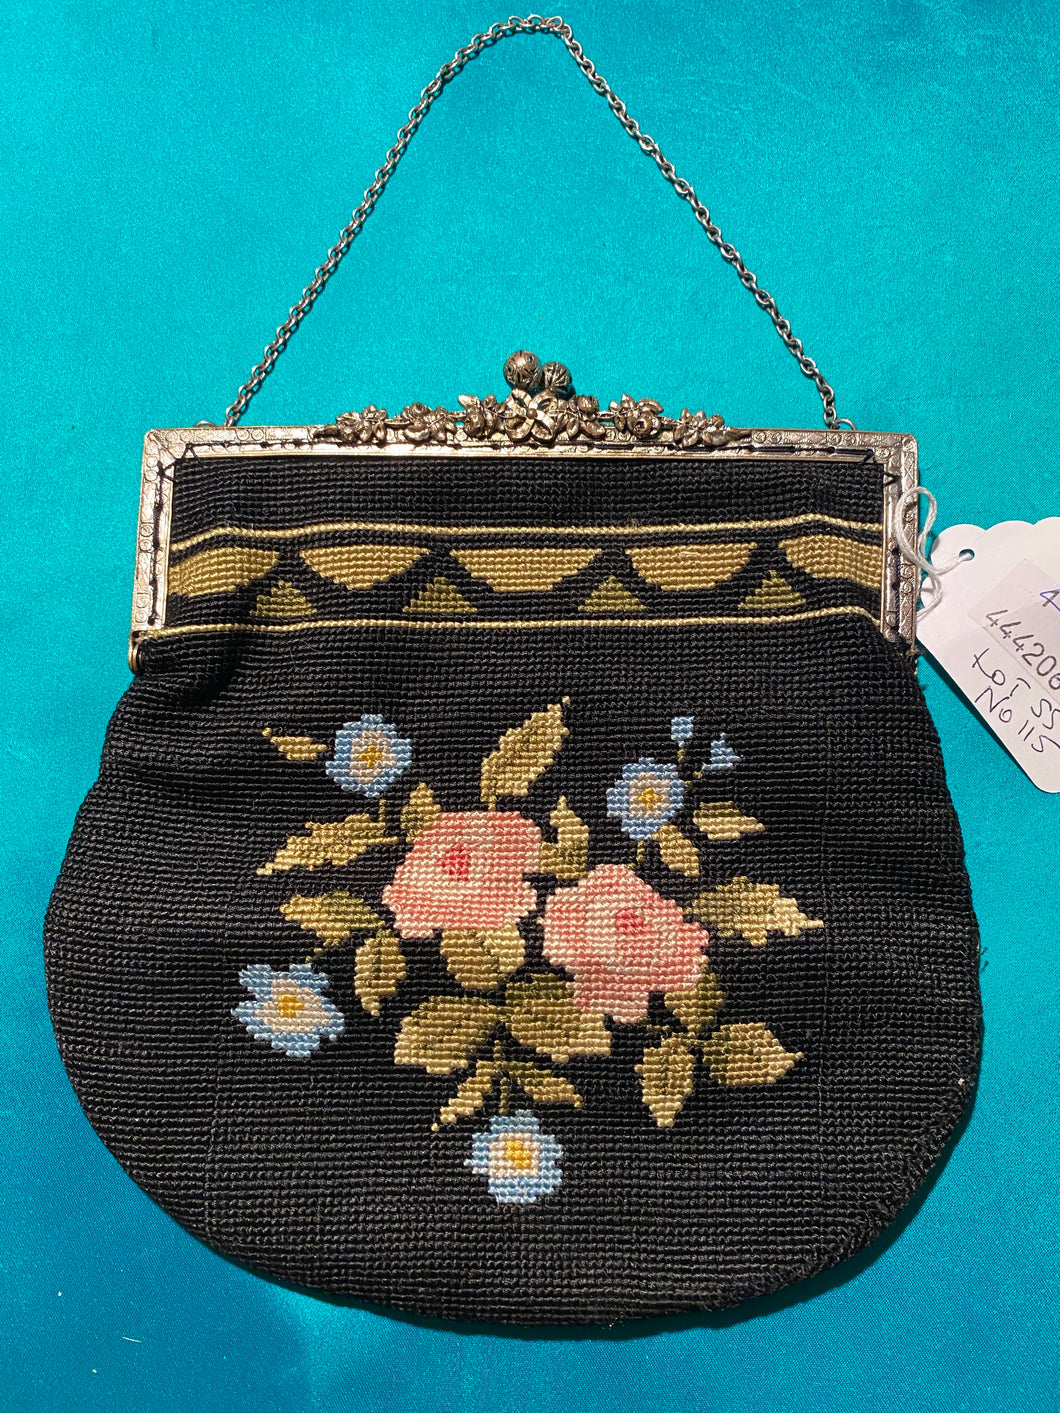 Tapestry vintage floral black bag